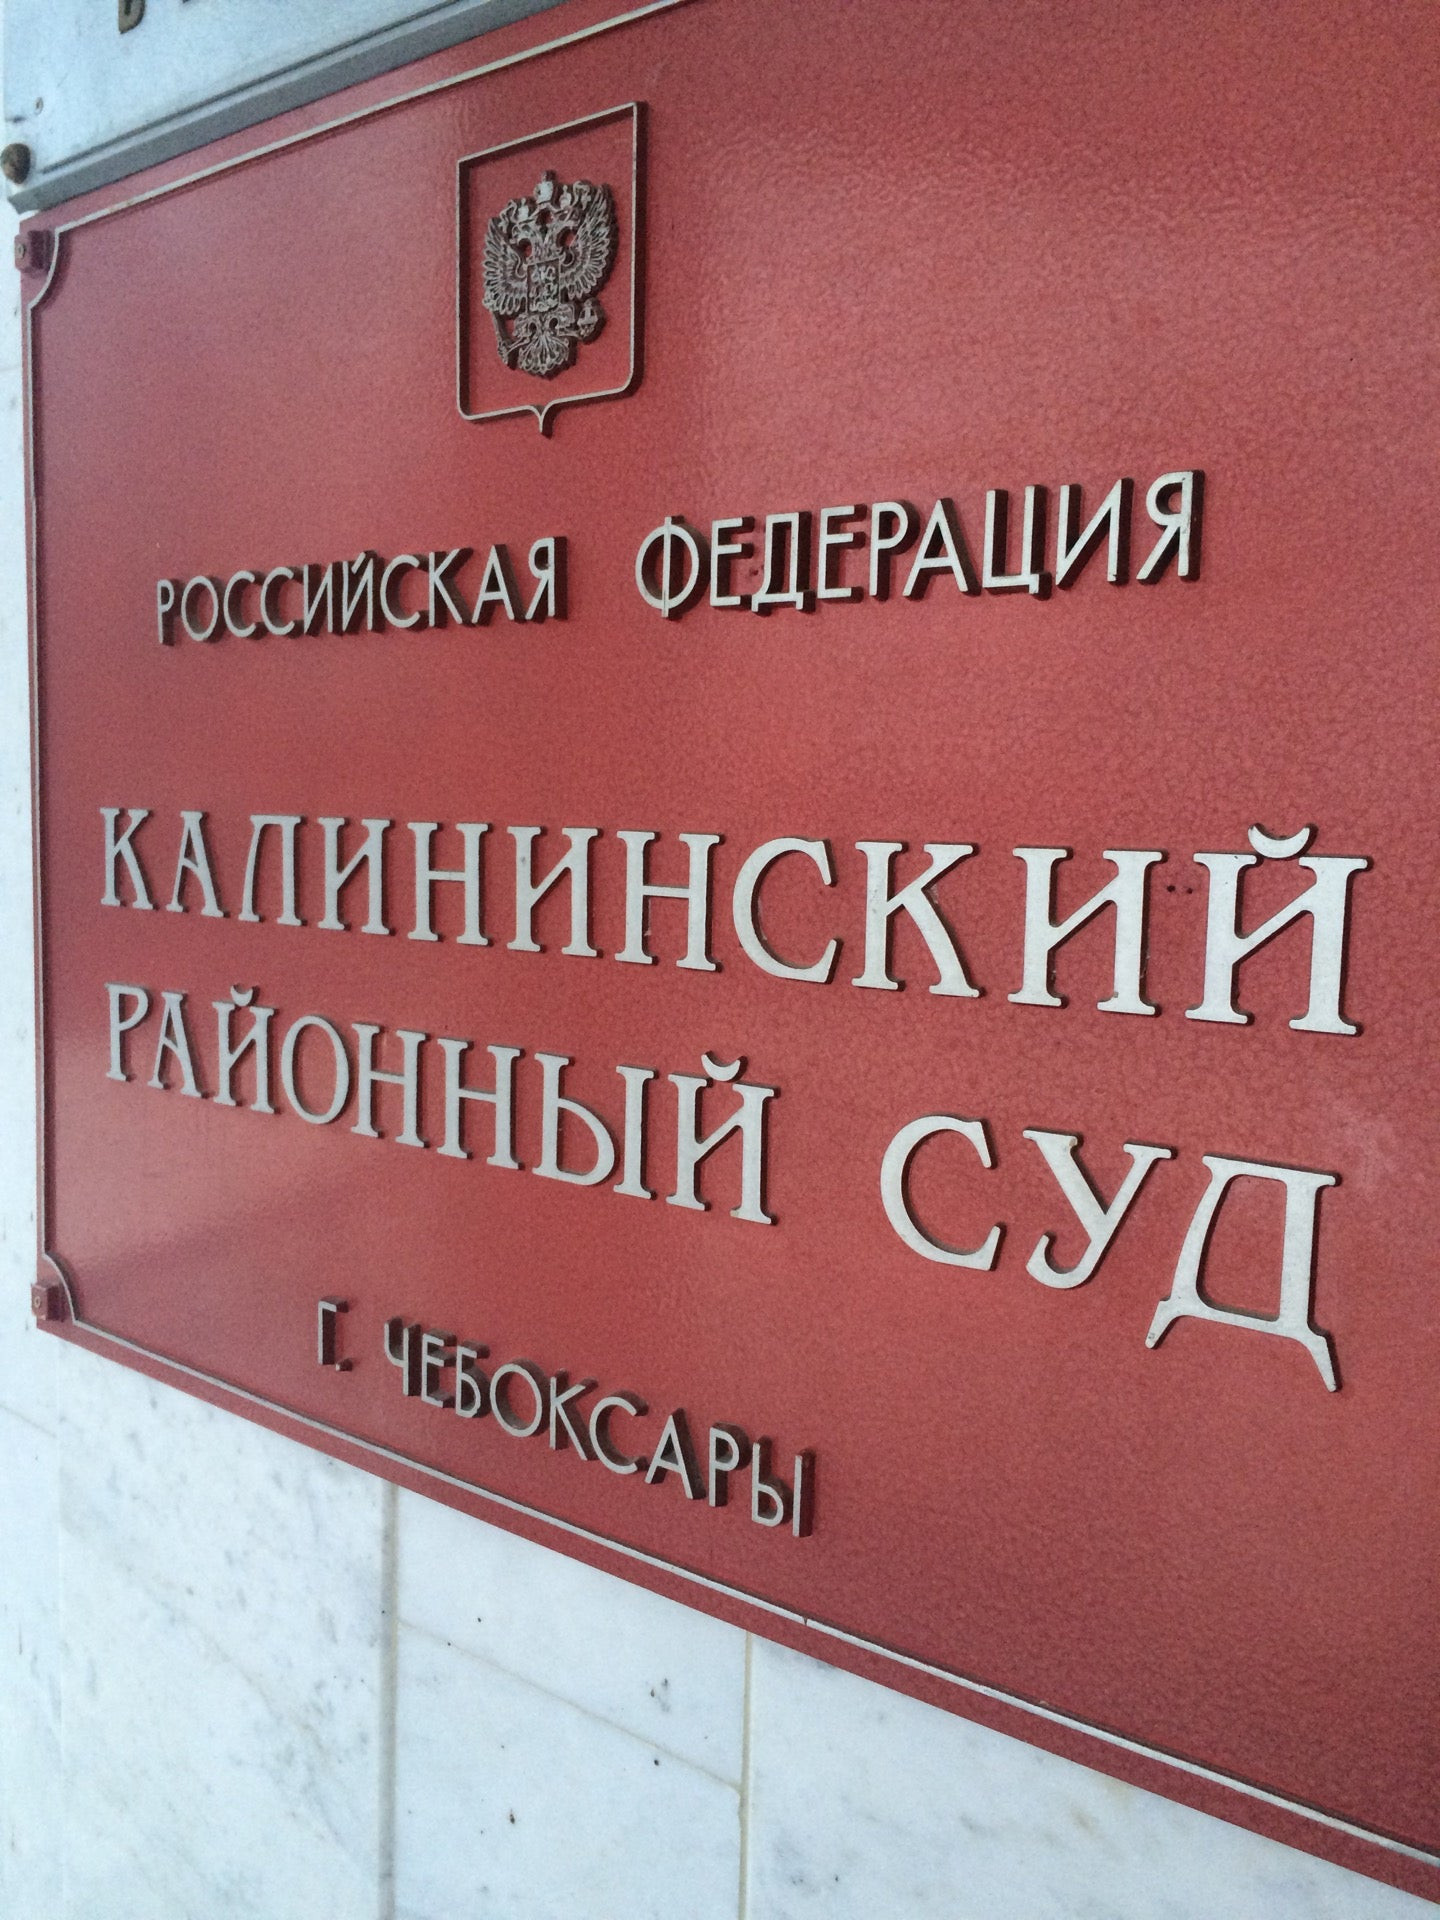 Сайт калининского районного суда саратовской